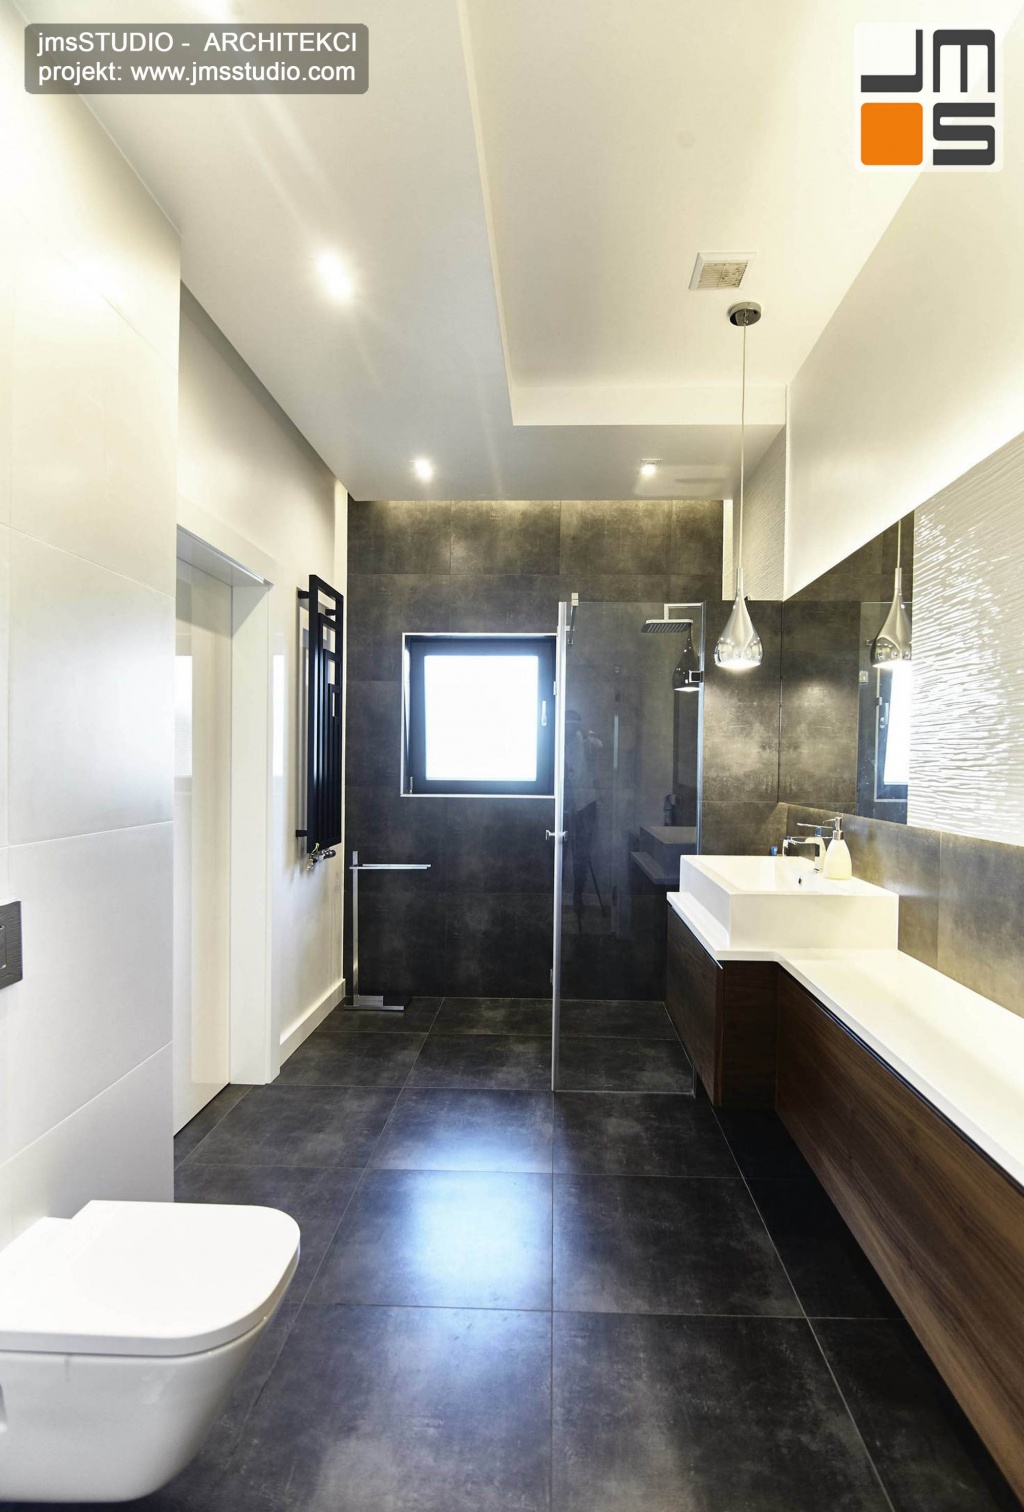 2018 06 w małej  łazience o dziwnym kształcie projekt wnętrz wprowadził sufit podwieszany z ciekawym oświetleniem oraz meble z drewna orzech i ciemne płytki